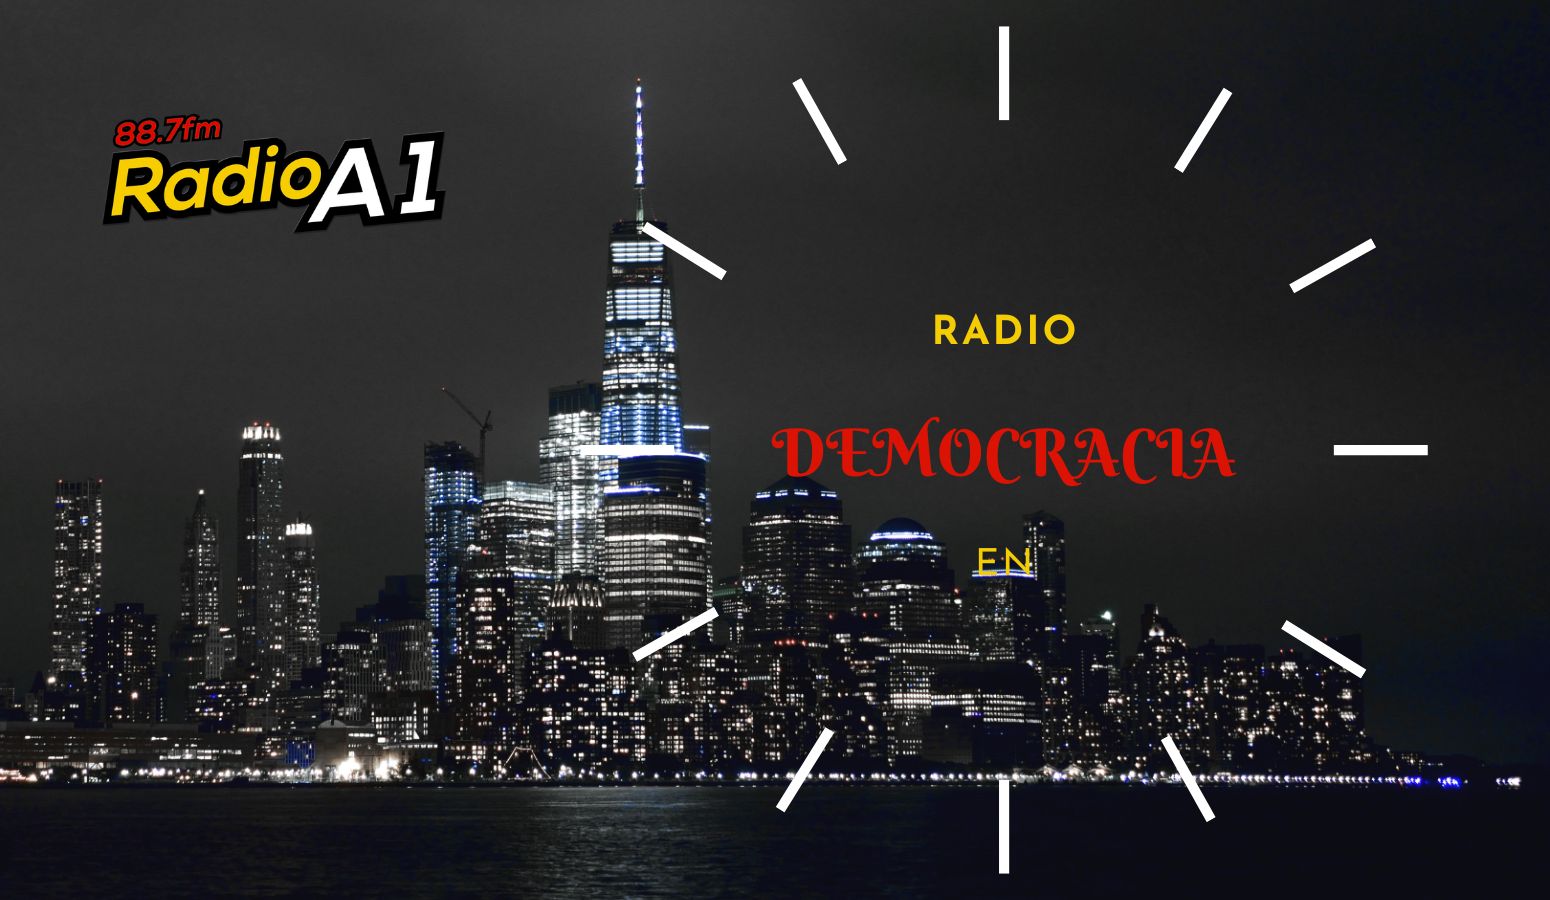 DEMOCRACIA EN RADIO